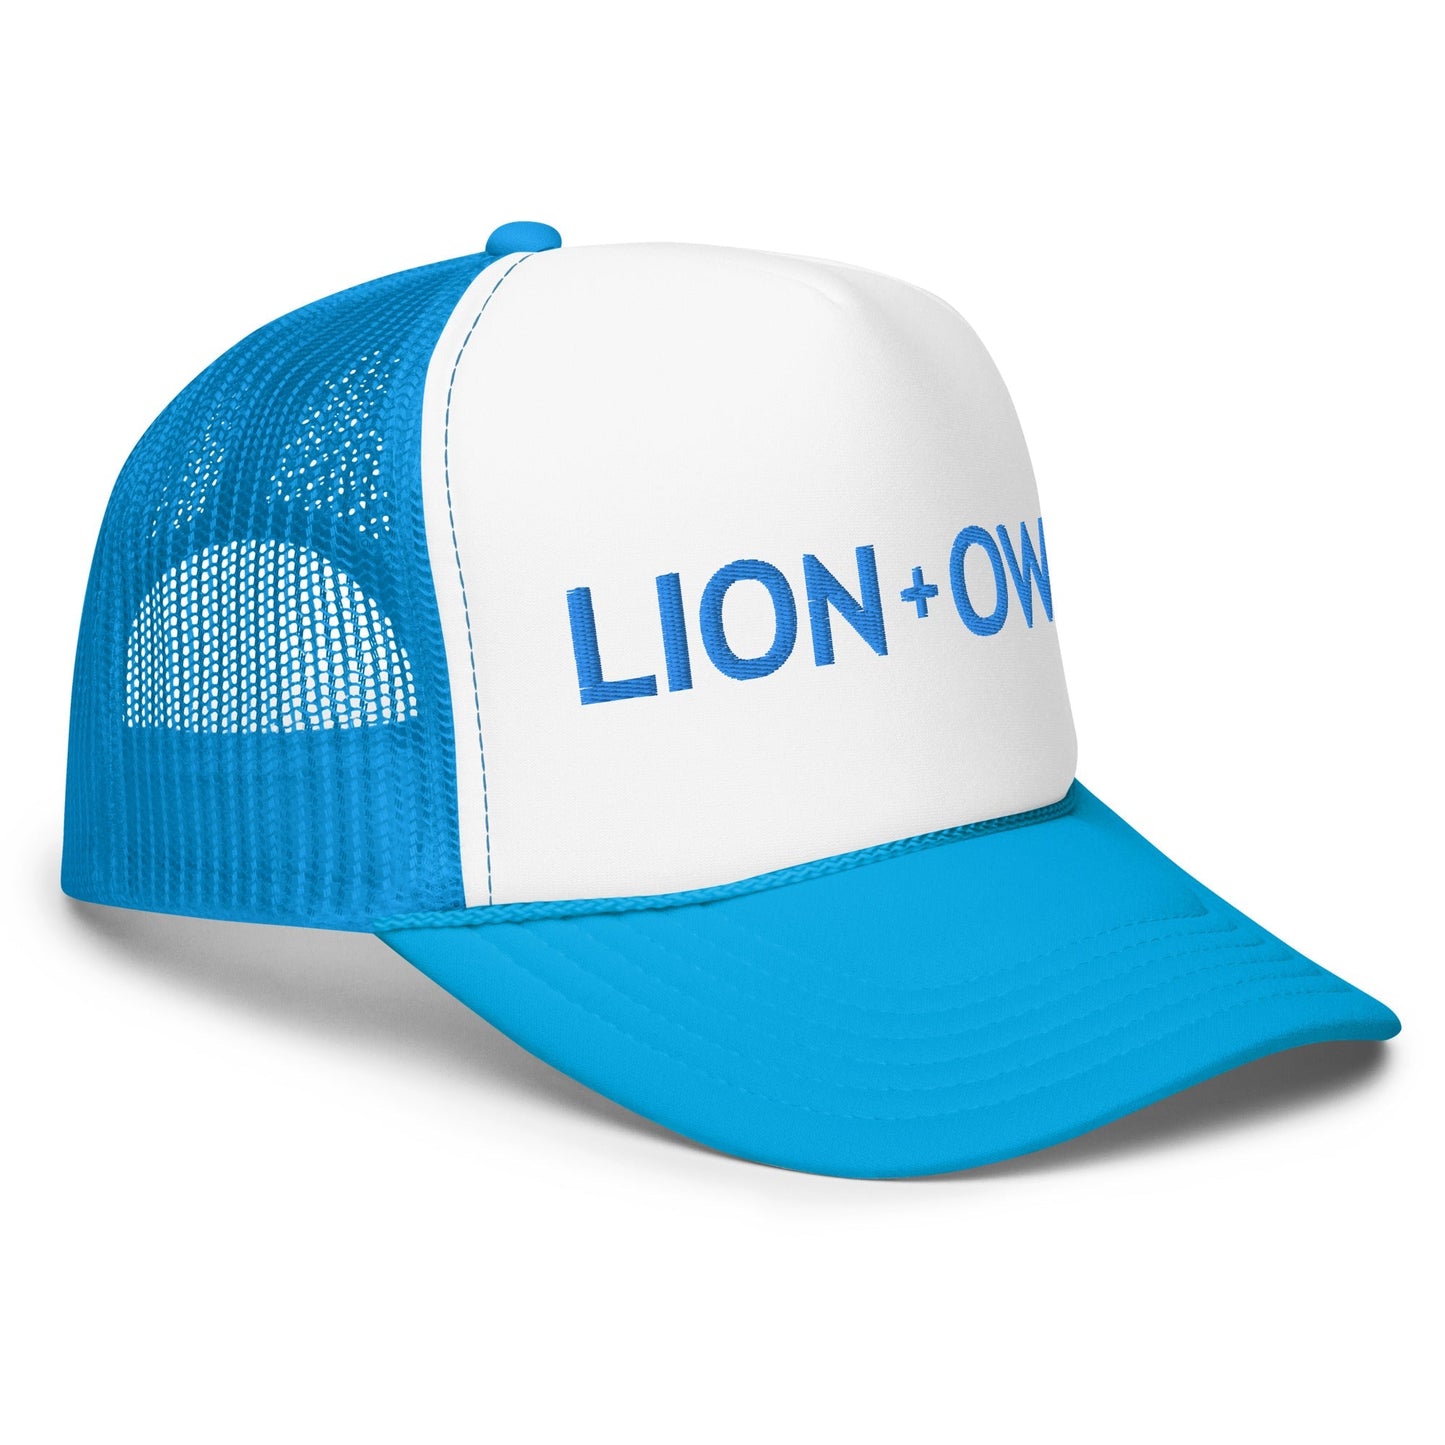 Lion+Owl Foam Trucker Hat